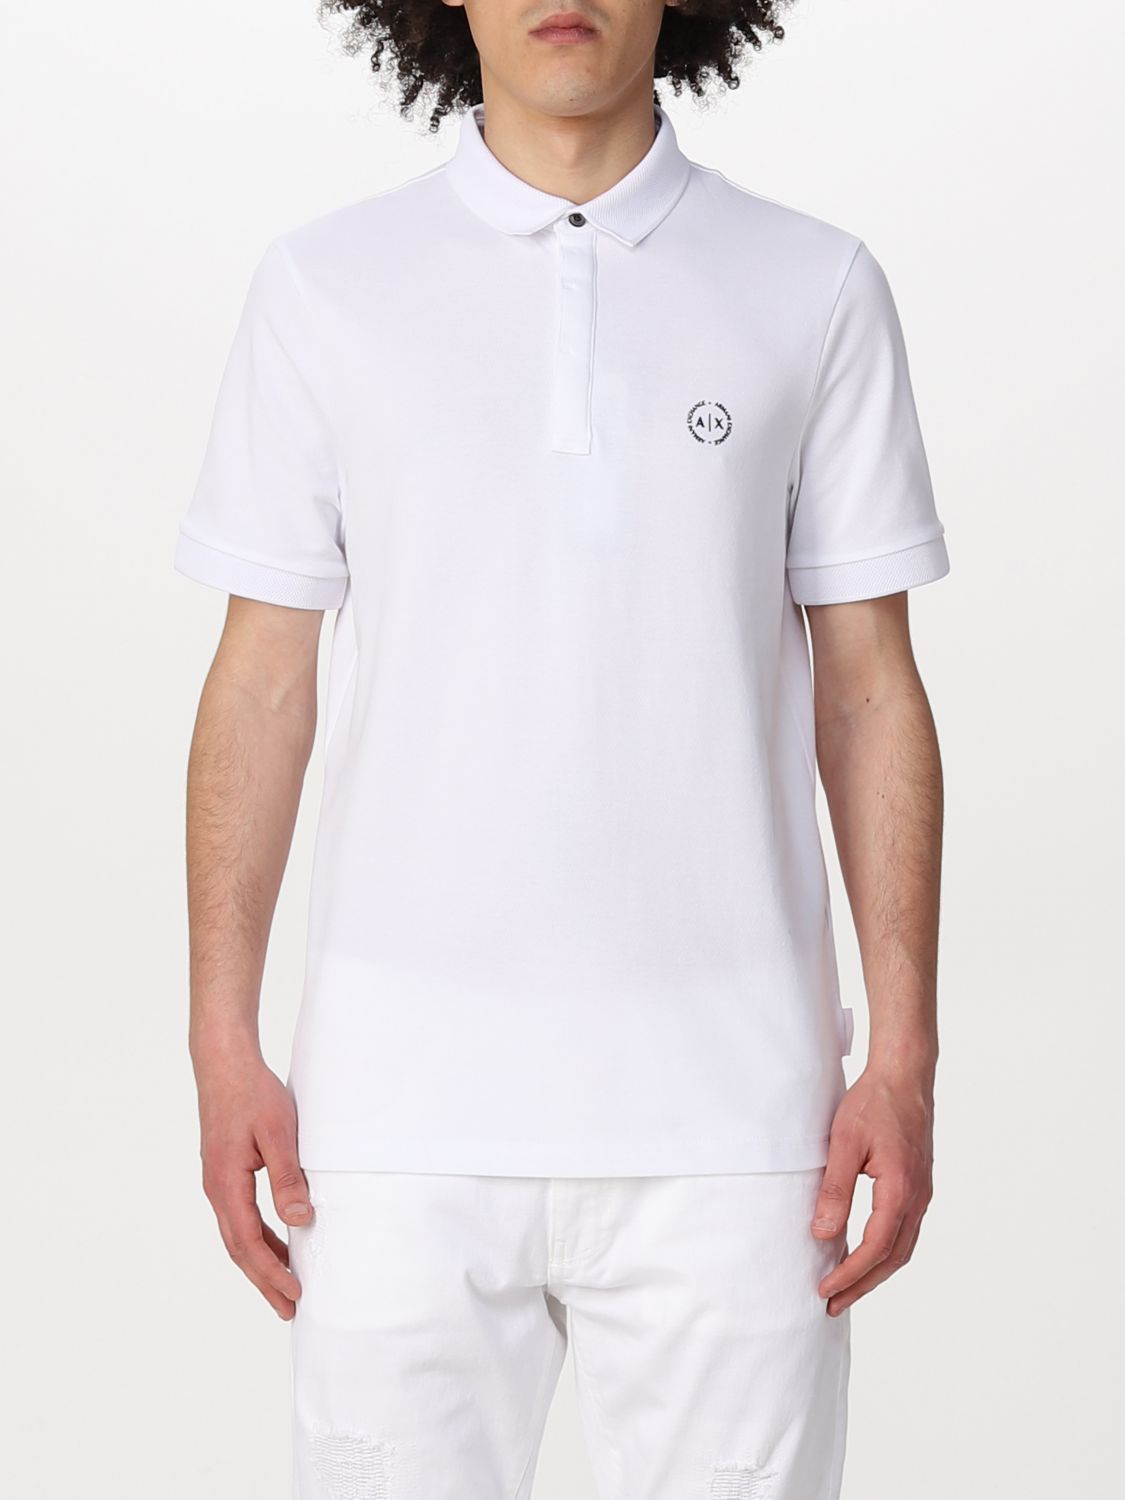 ARMANI EXCHANGE: polo shirt for man - White | Armani Exchange polo ...